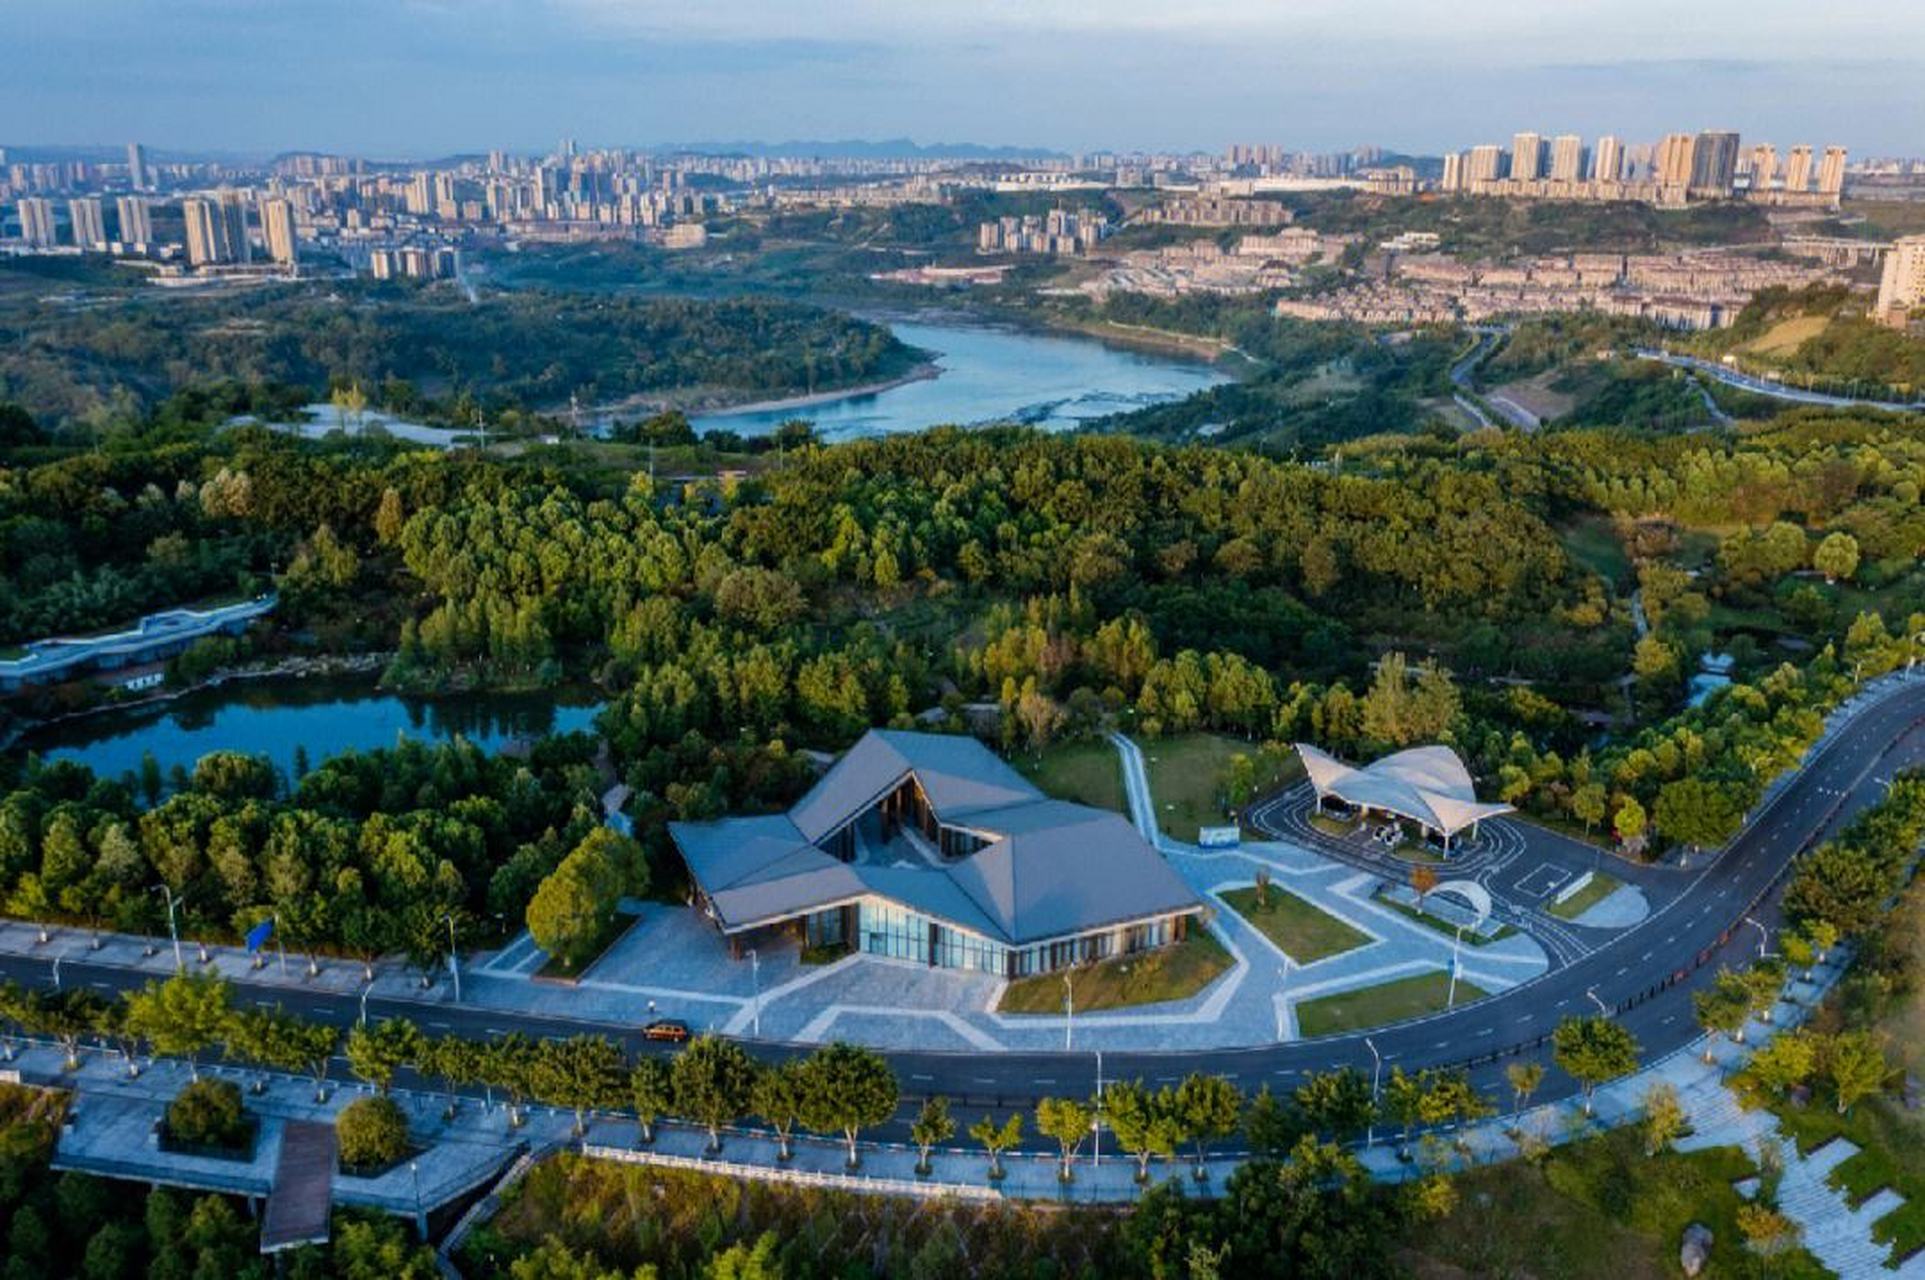 重庆礼嘉智慧公园:占地约3平方公里,拥有智能体验馆,生态体验馆,亲子